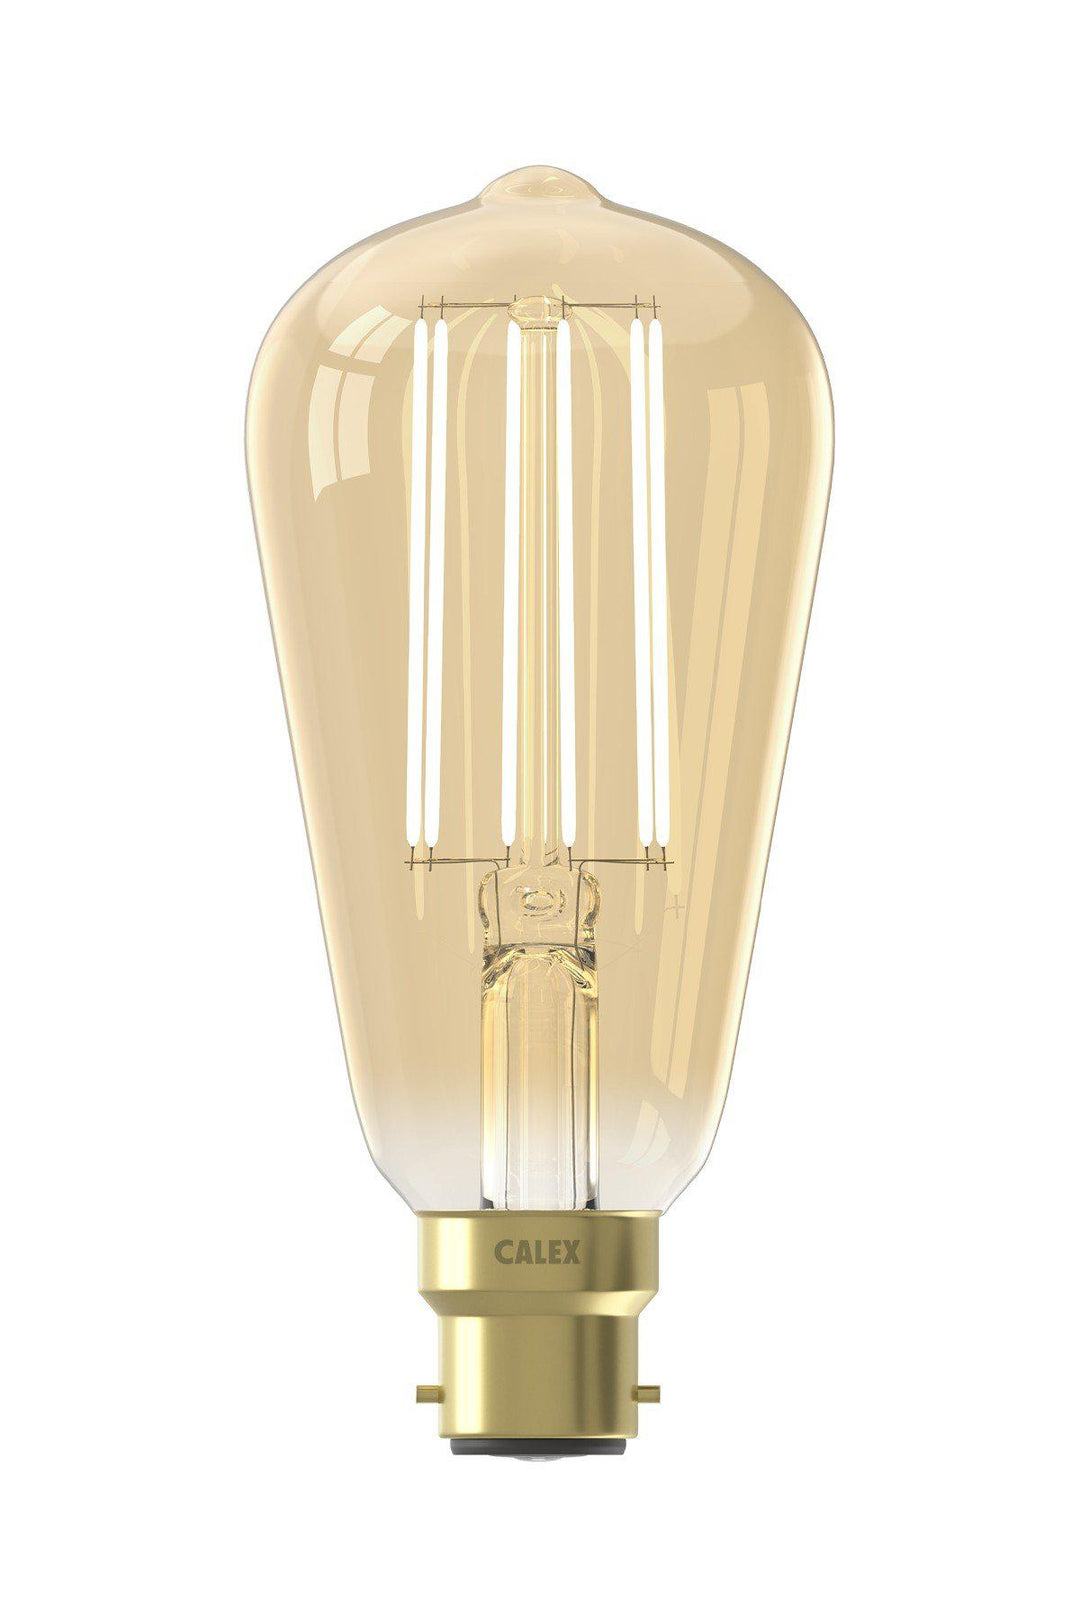 Calex 425415 | LED Gold Long Filament Rustik Bulb | B22 | ST64 | 4W